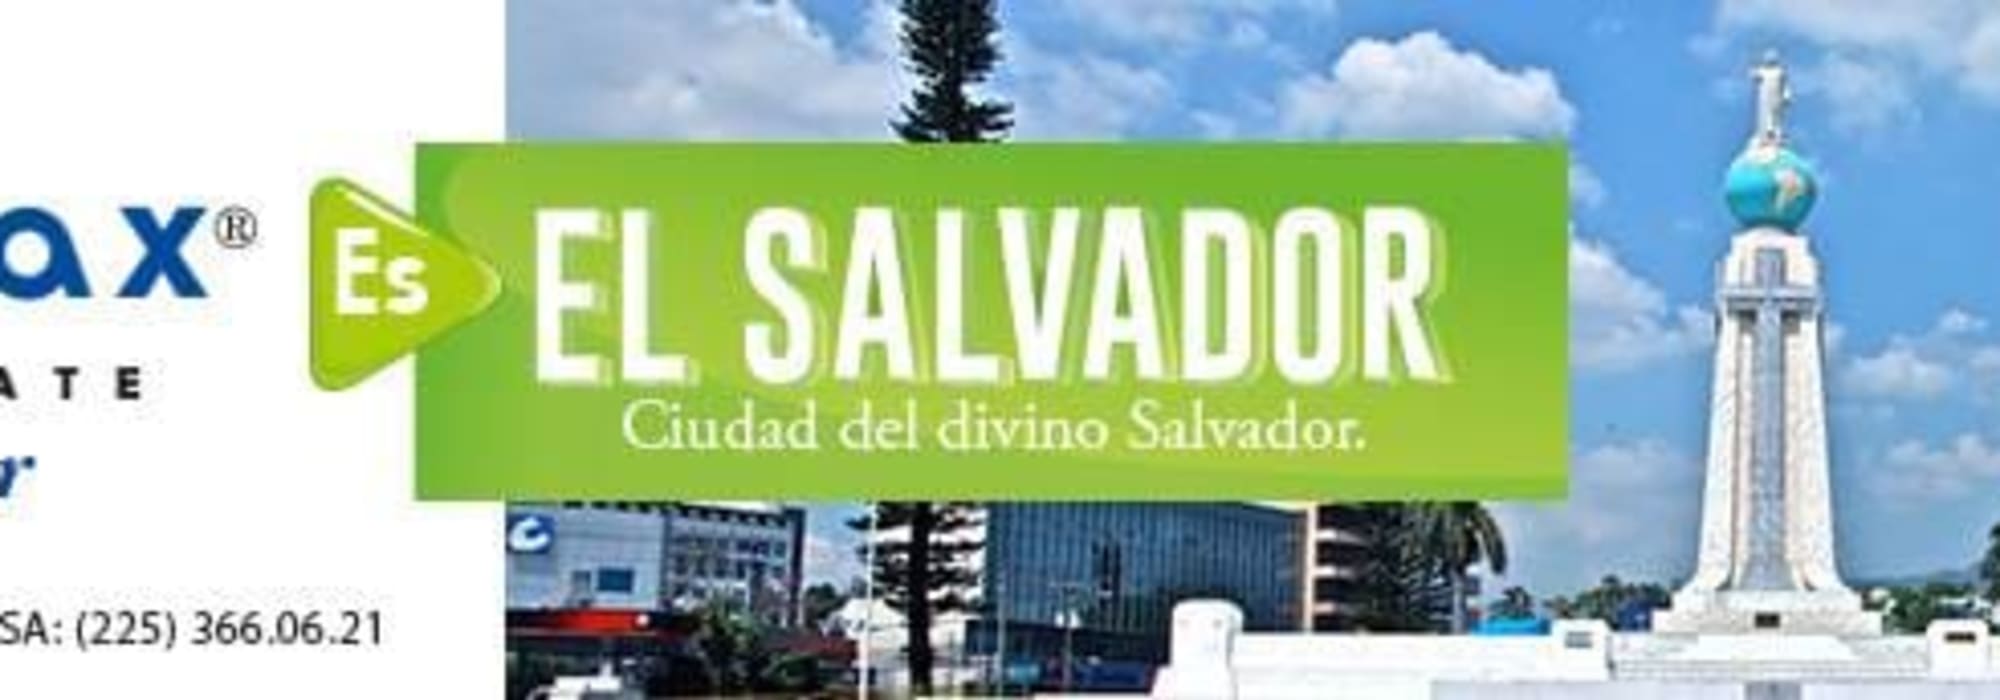 CITYMAX El Salvador